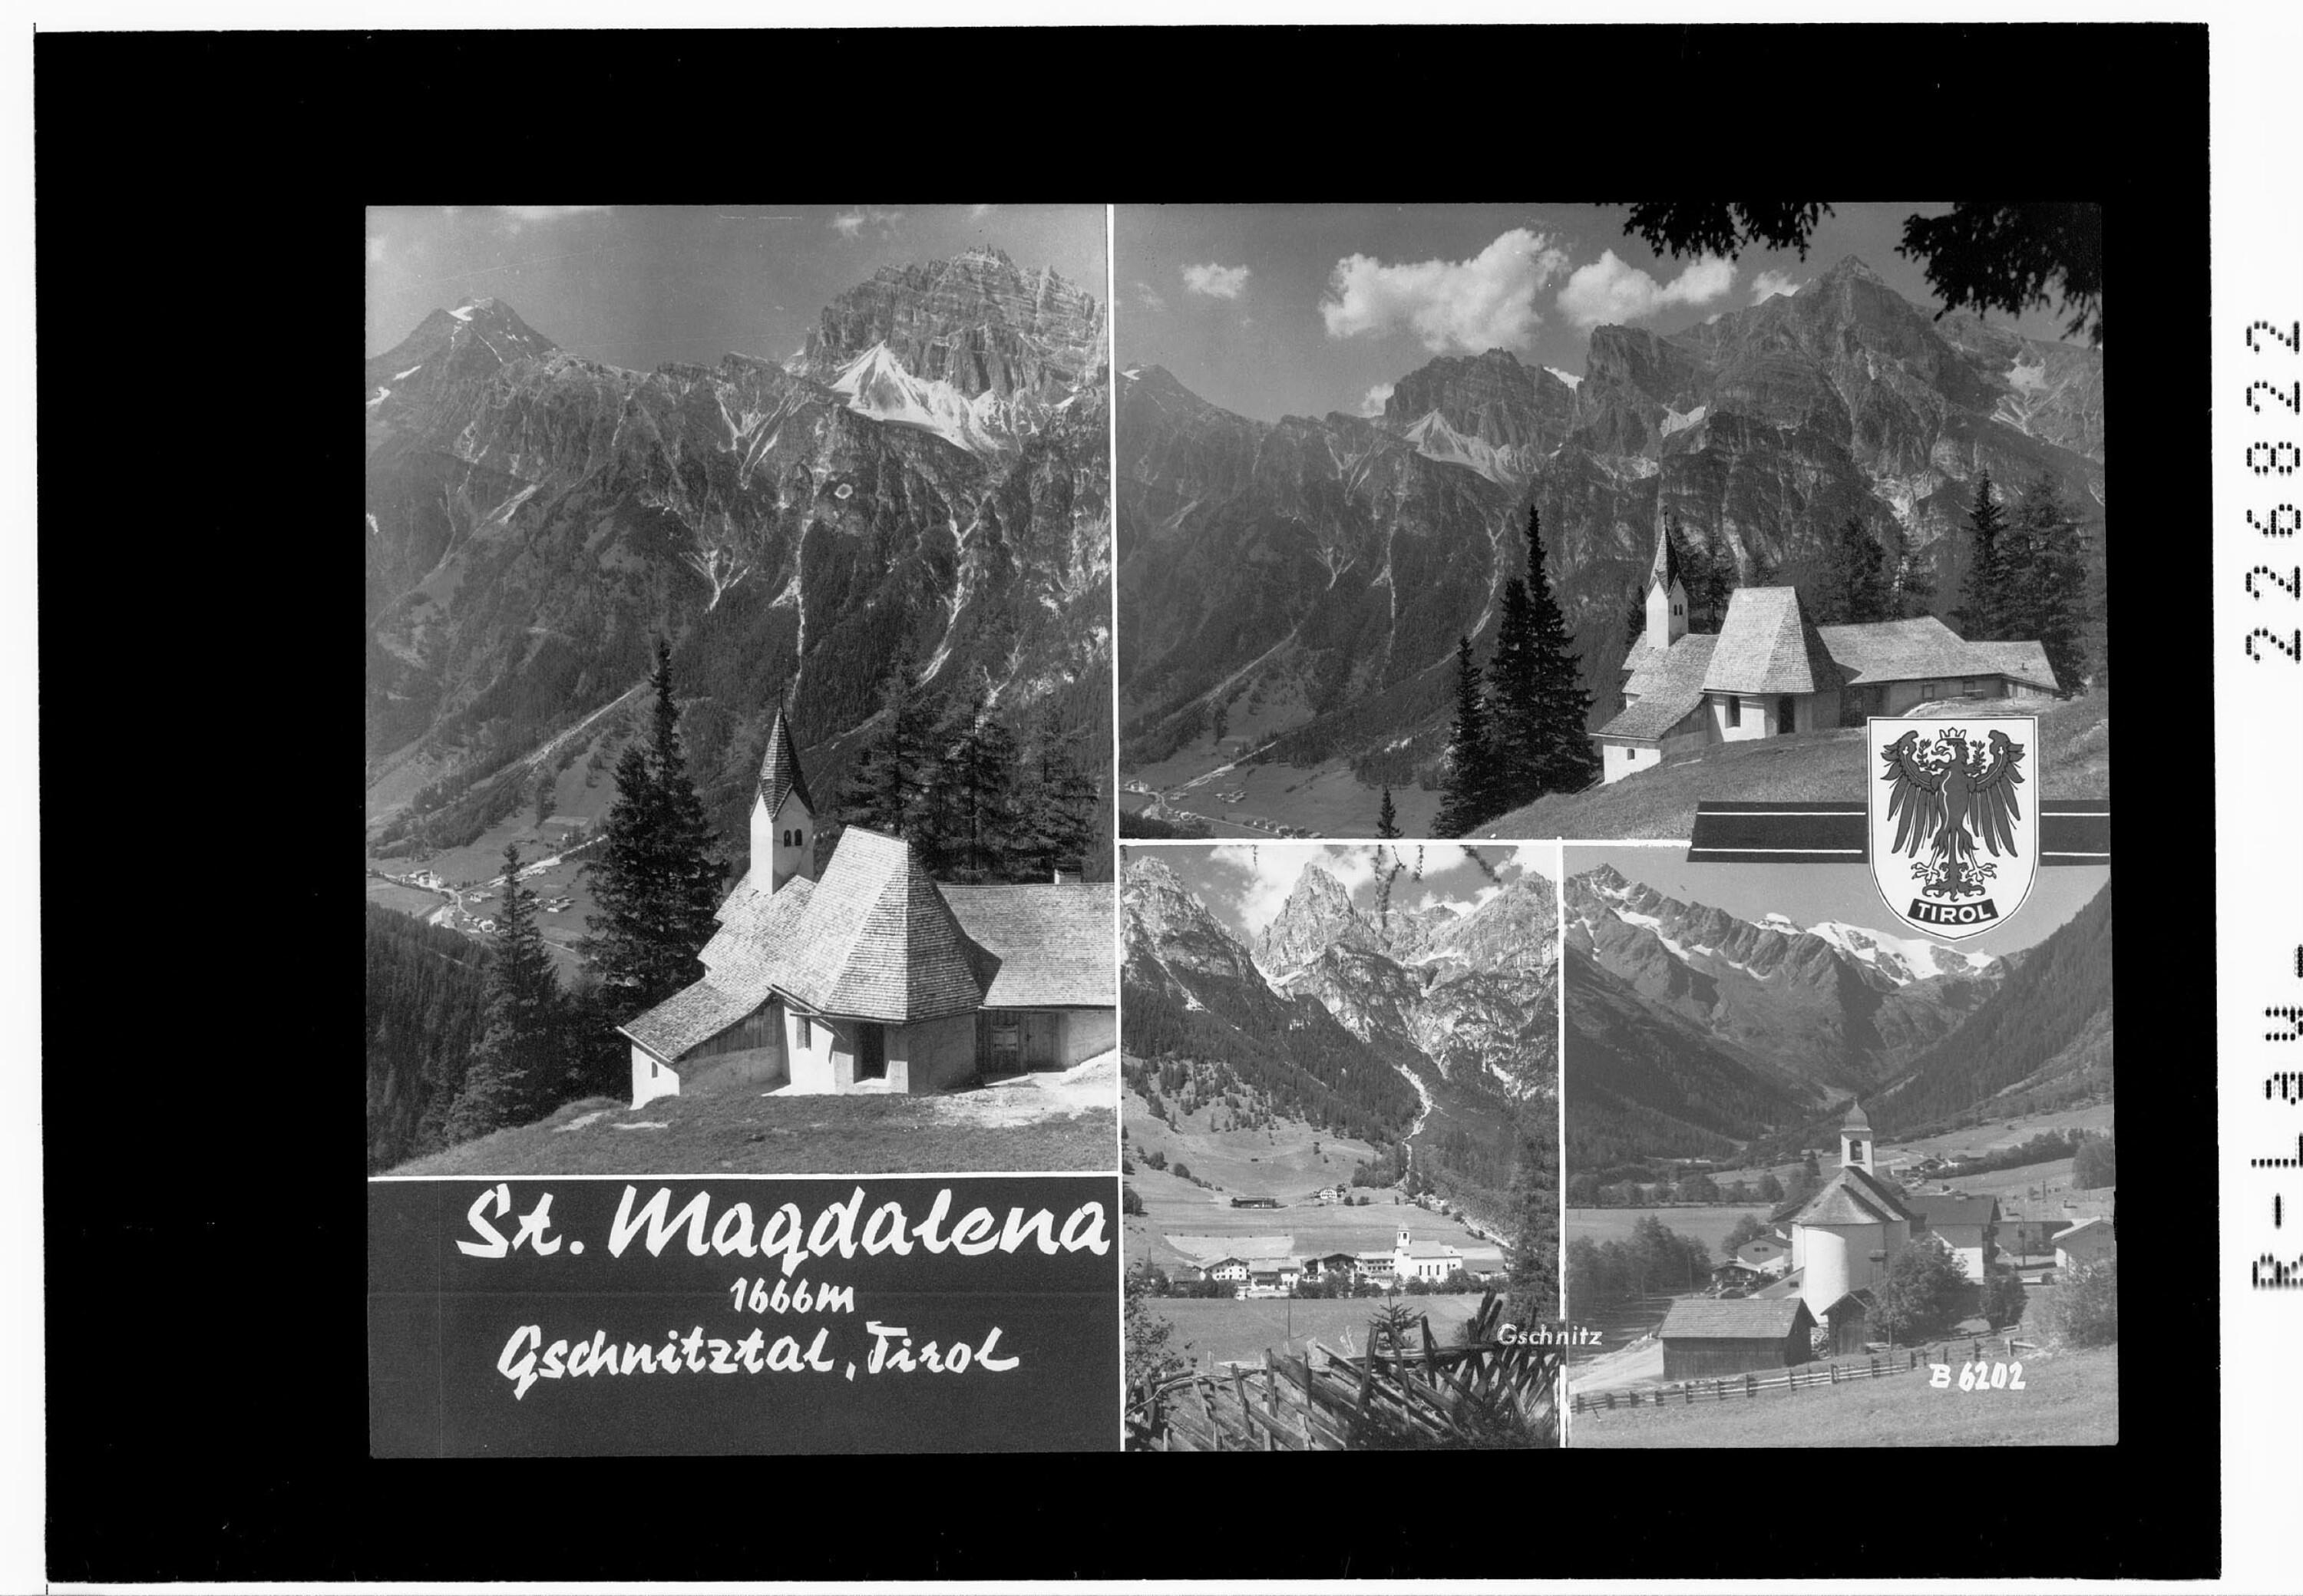 St. Magdalena 1666 m / Gschnitztal / Tirol></div>


    <hr>
    <div class=